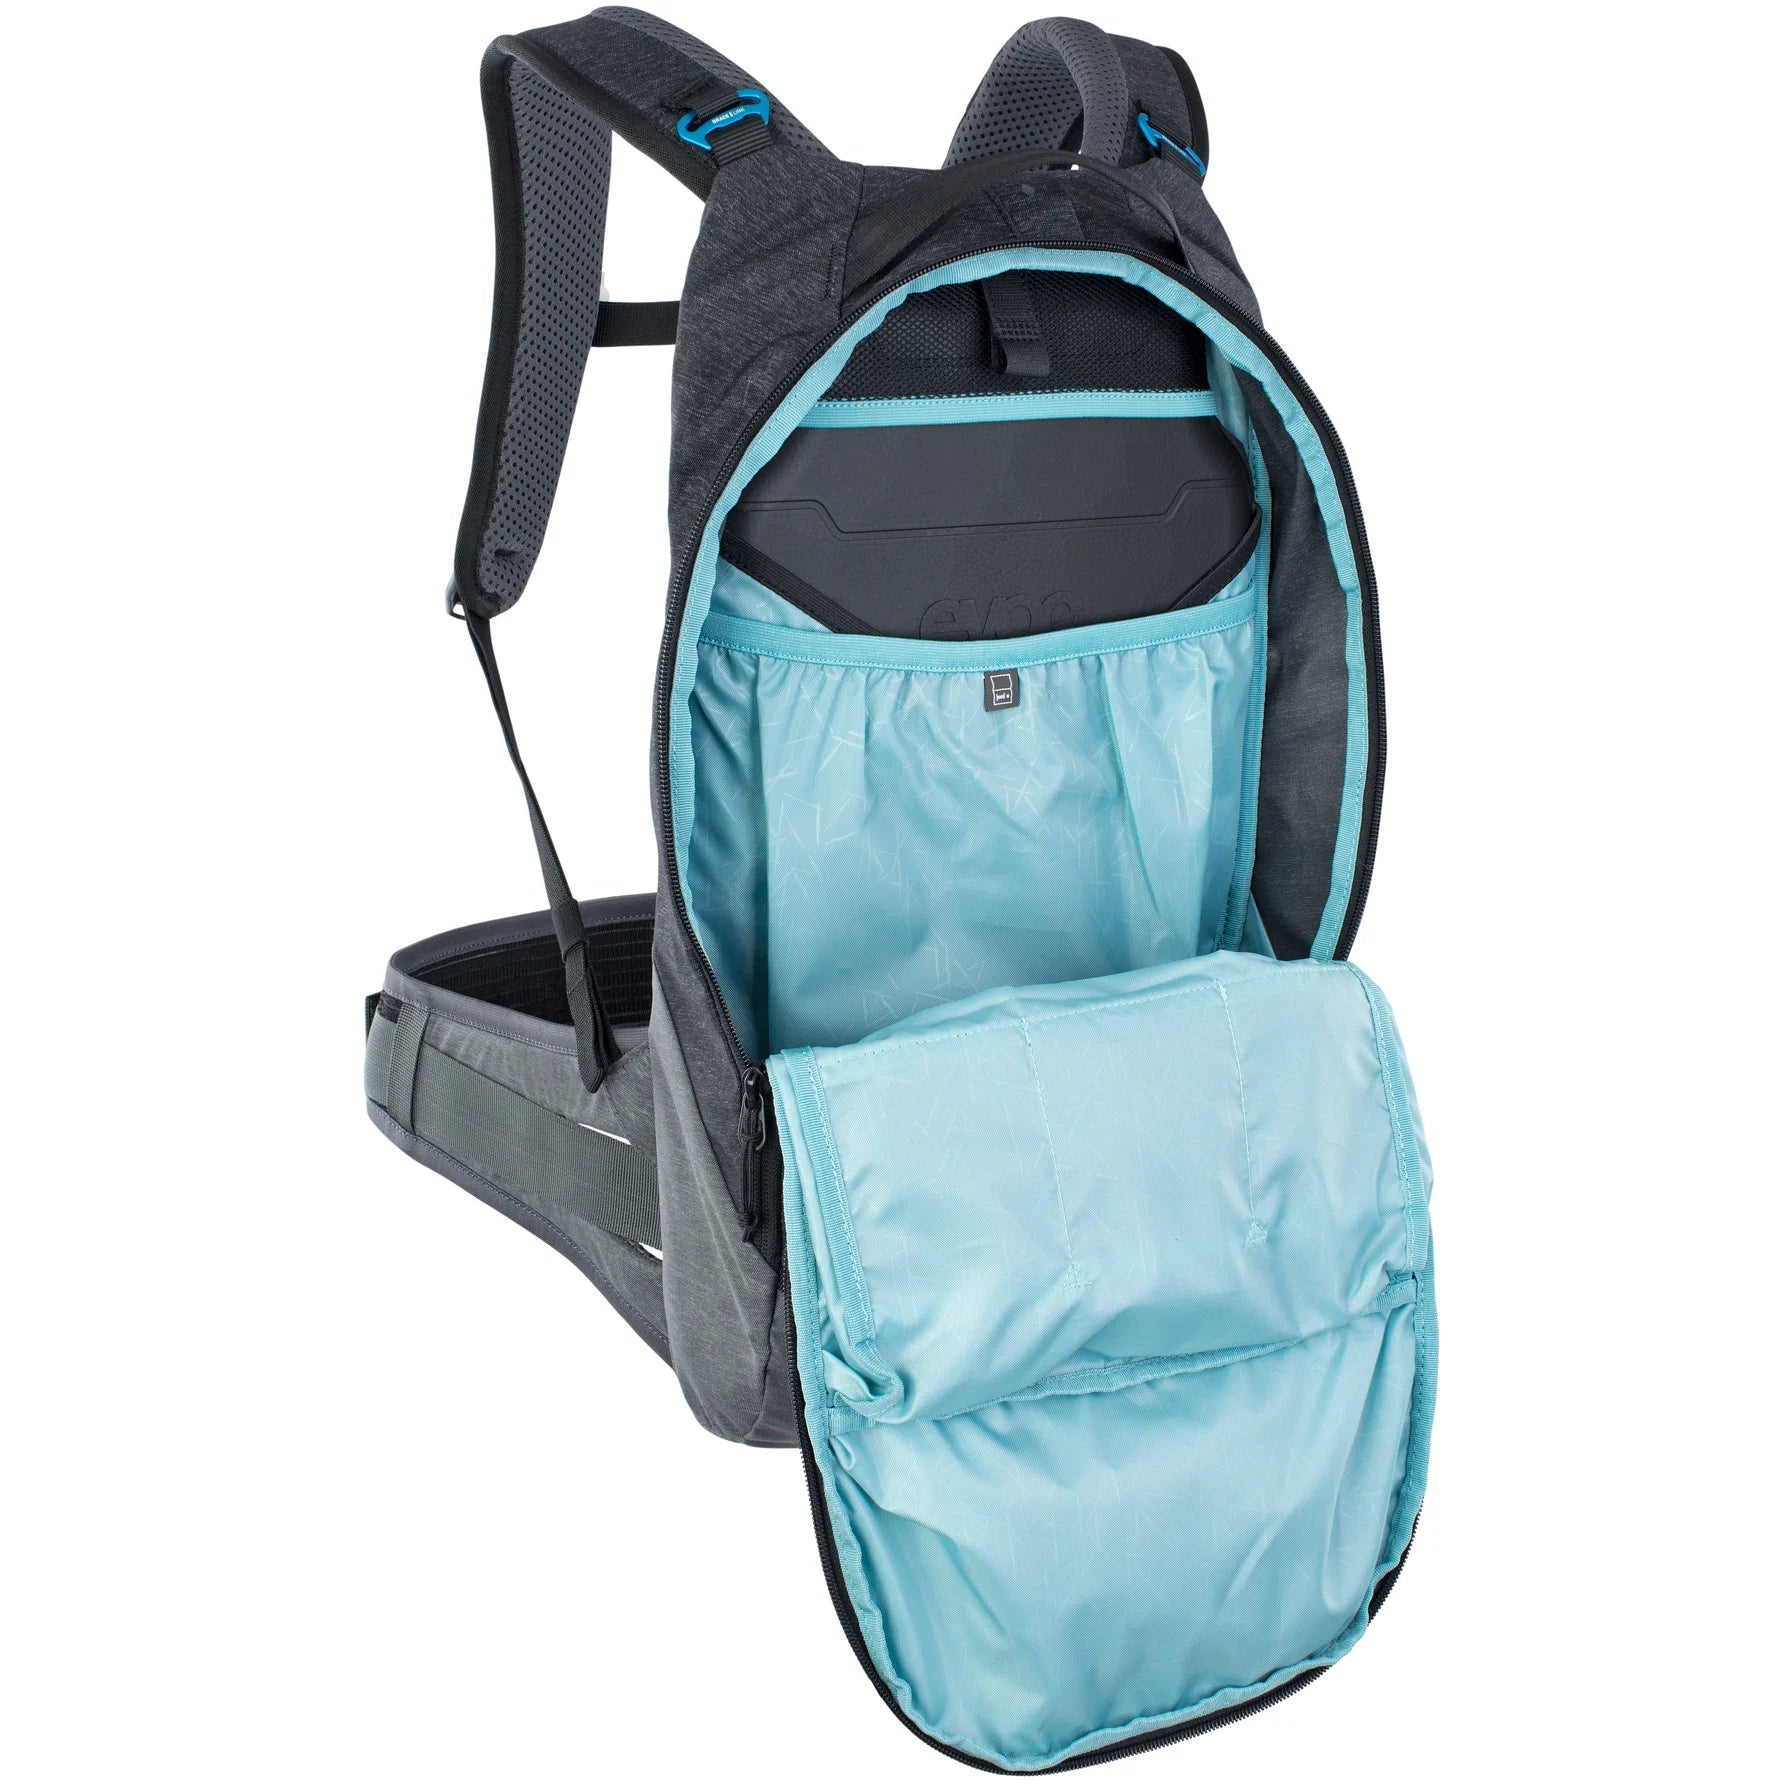 Evoc Trail Pro 10L Backpack L/XL 55 cm - Light Olive/Carbon Grey